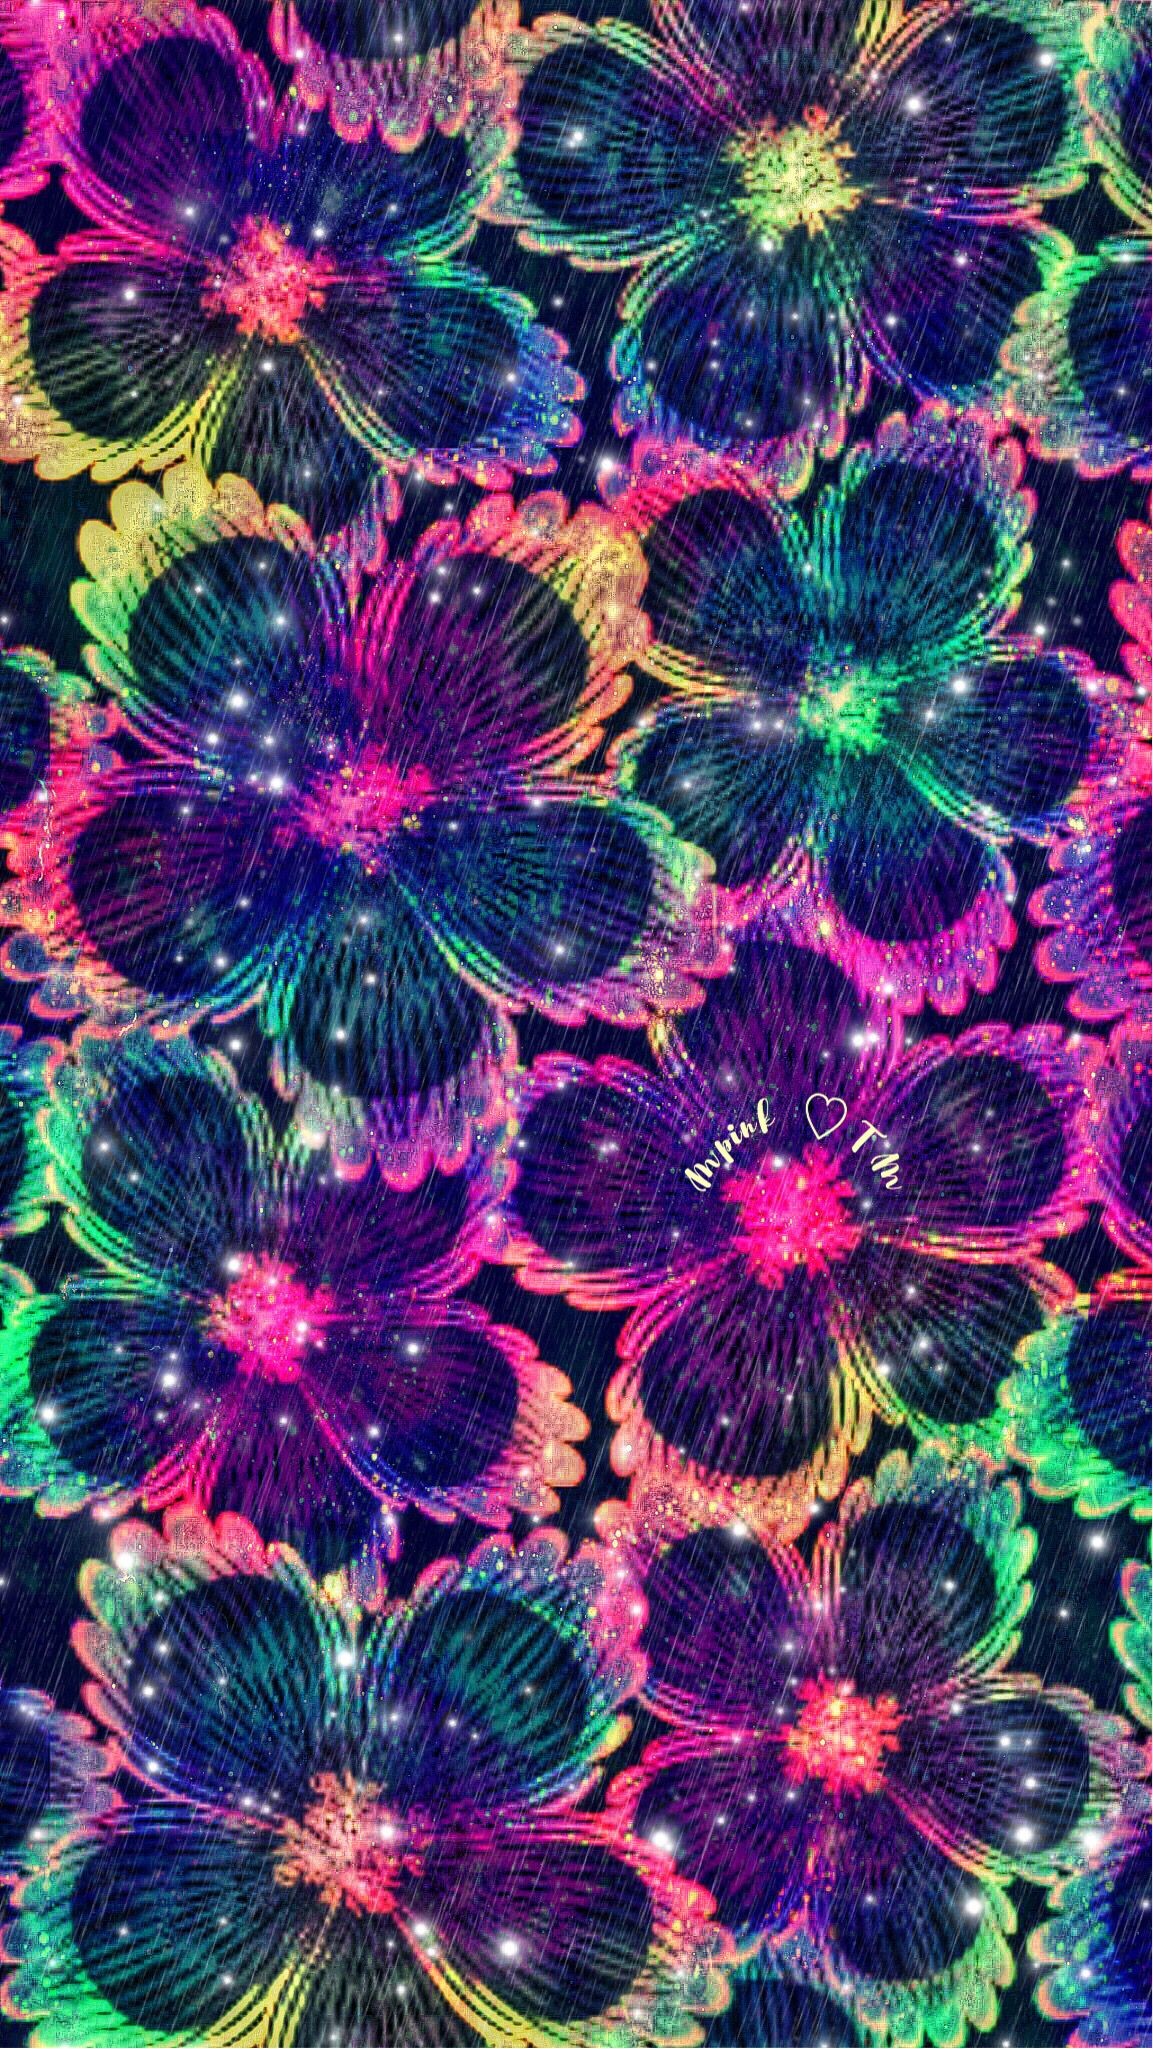 1153x2049 Neon Flowers Galaxy Wallpaper #androidwallpaper #iphonewallpaper #wallpaper  #galaxy #sparkle #glitter #lockscreen #pretty #cute #girly #pattern #art ...